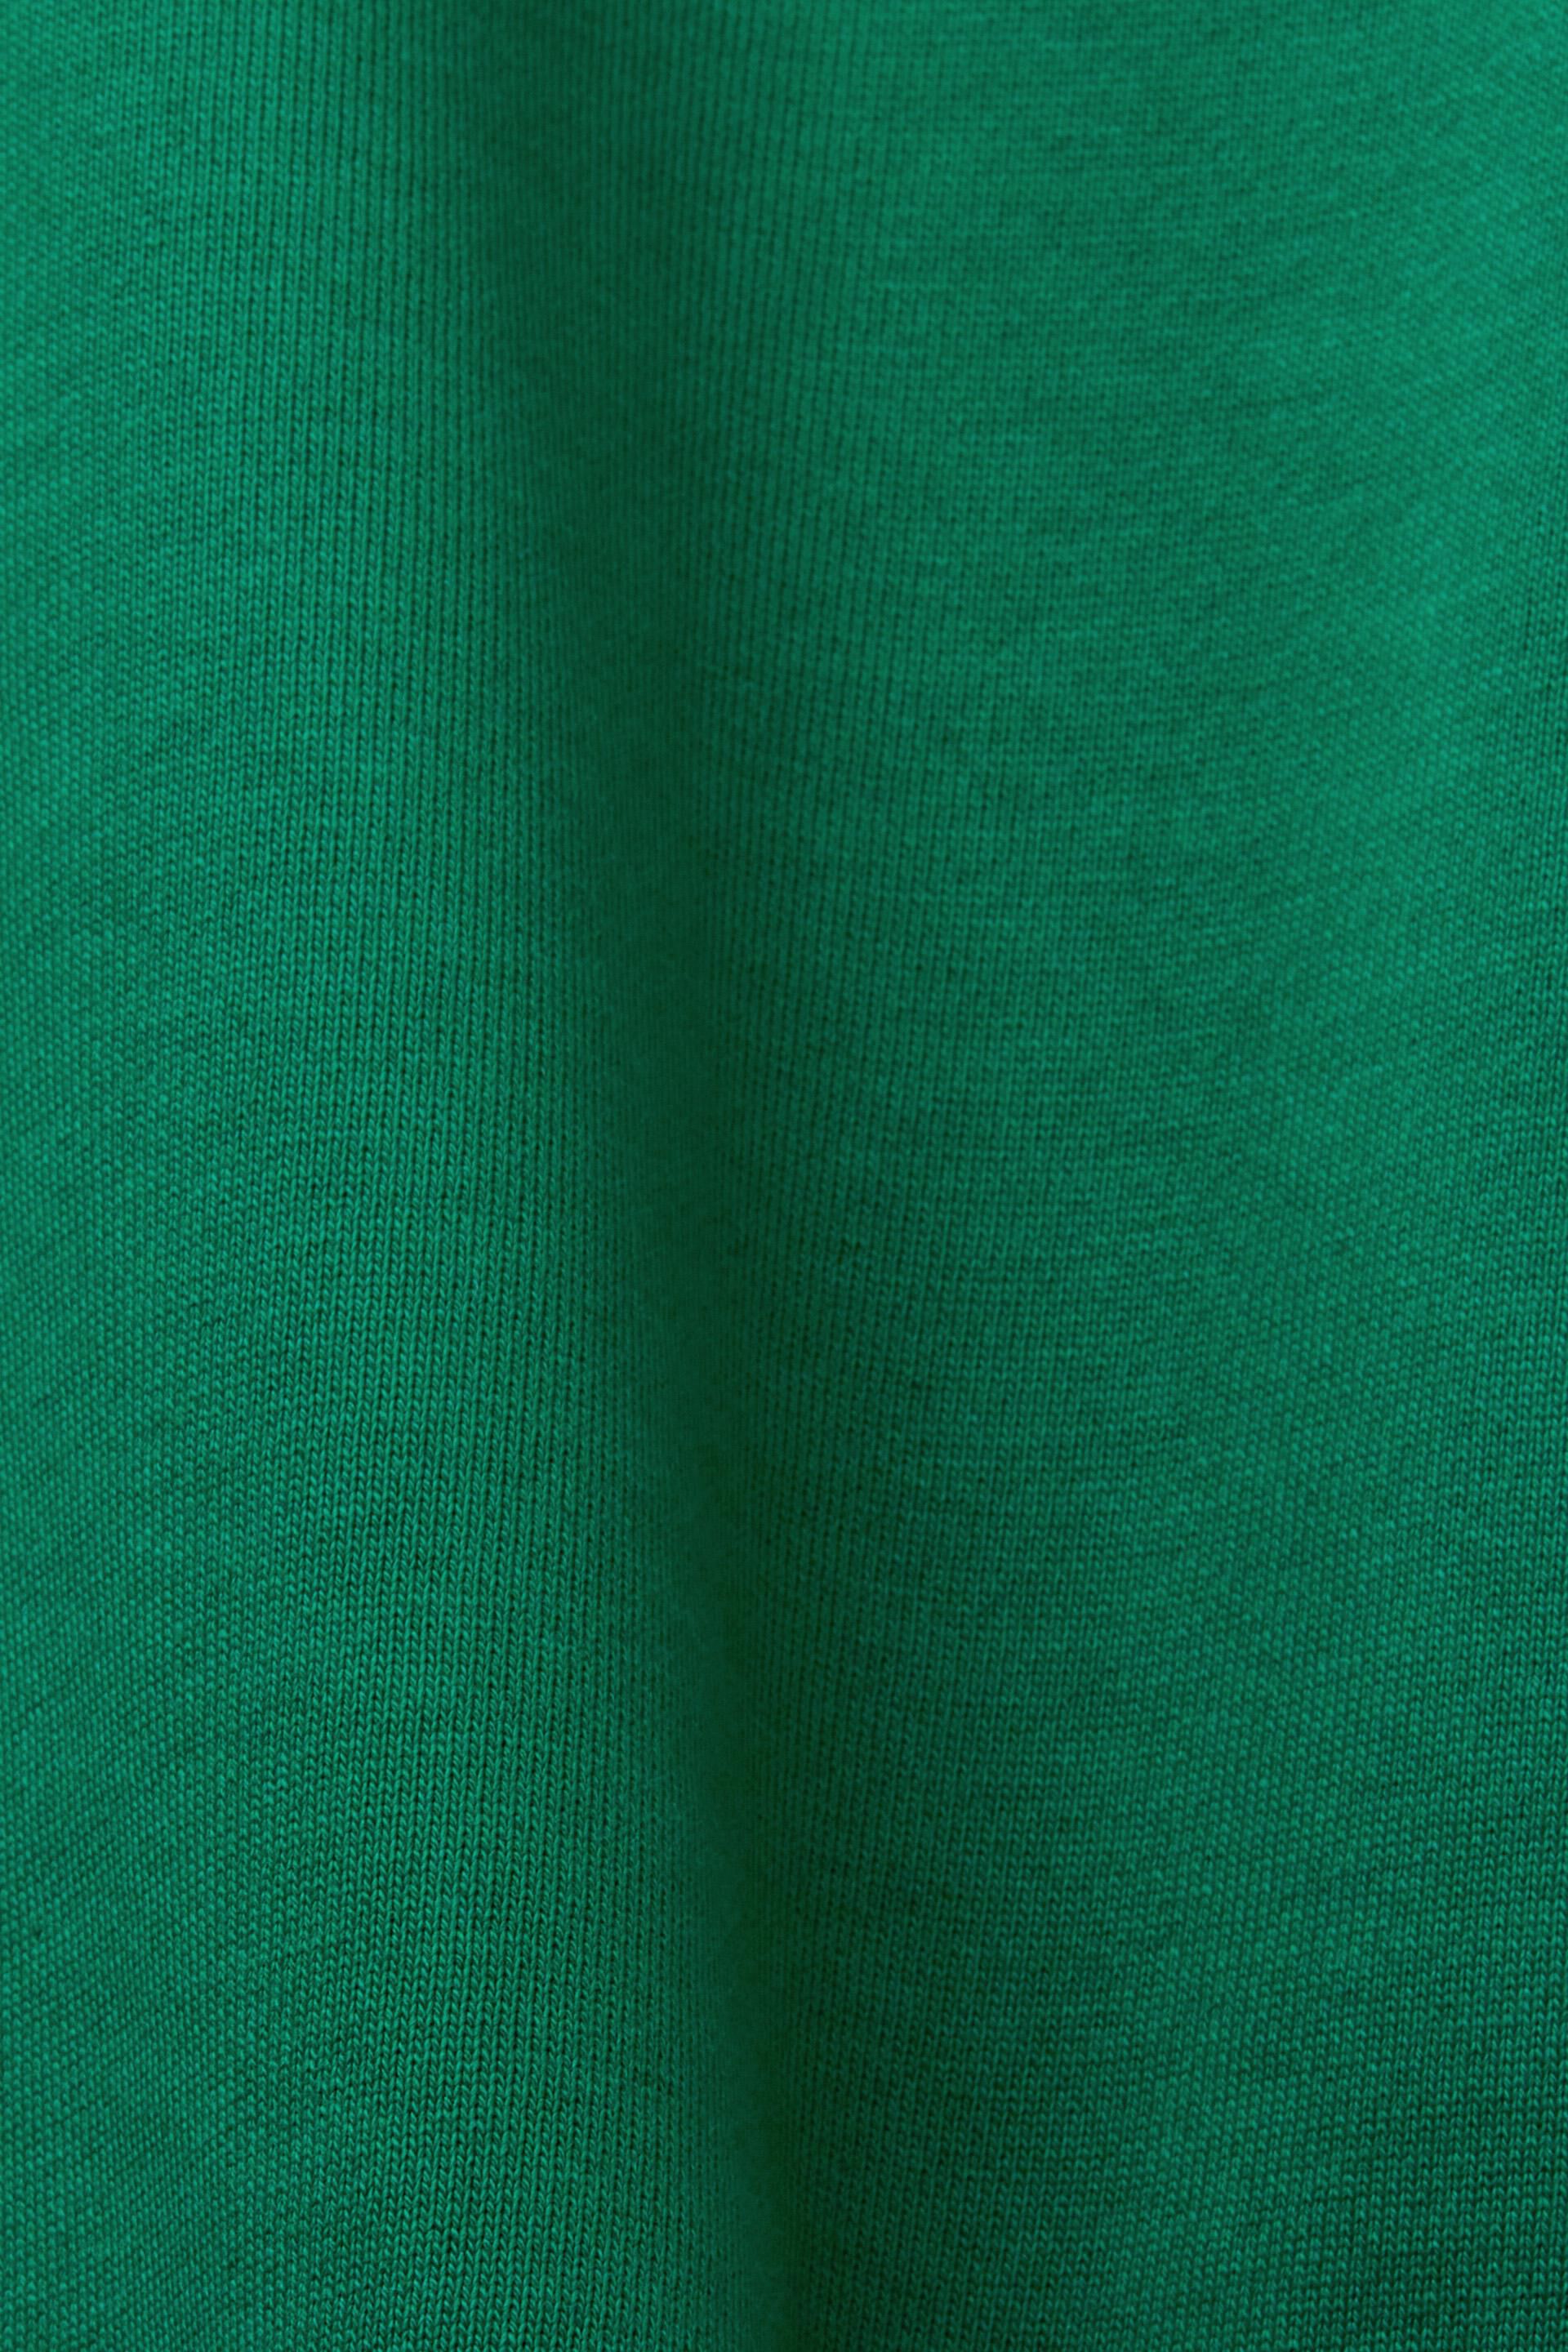 Esprit % Logo-Sweatshirt, Bio-Baumwolle 100